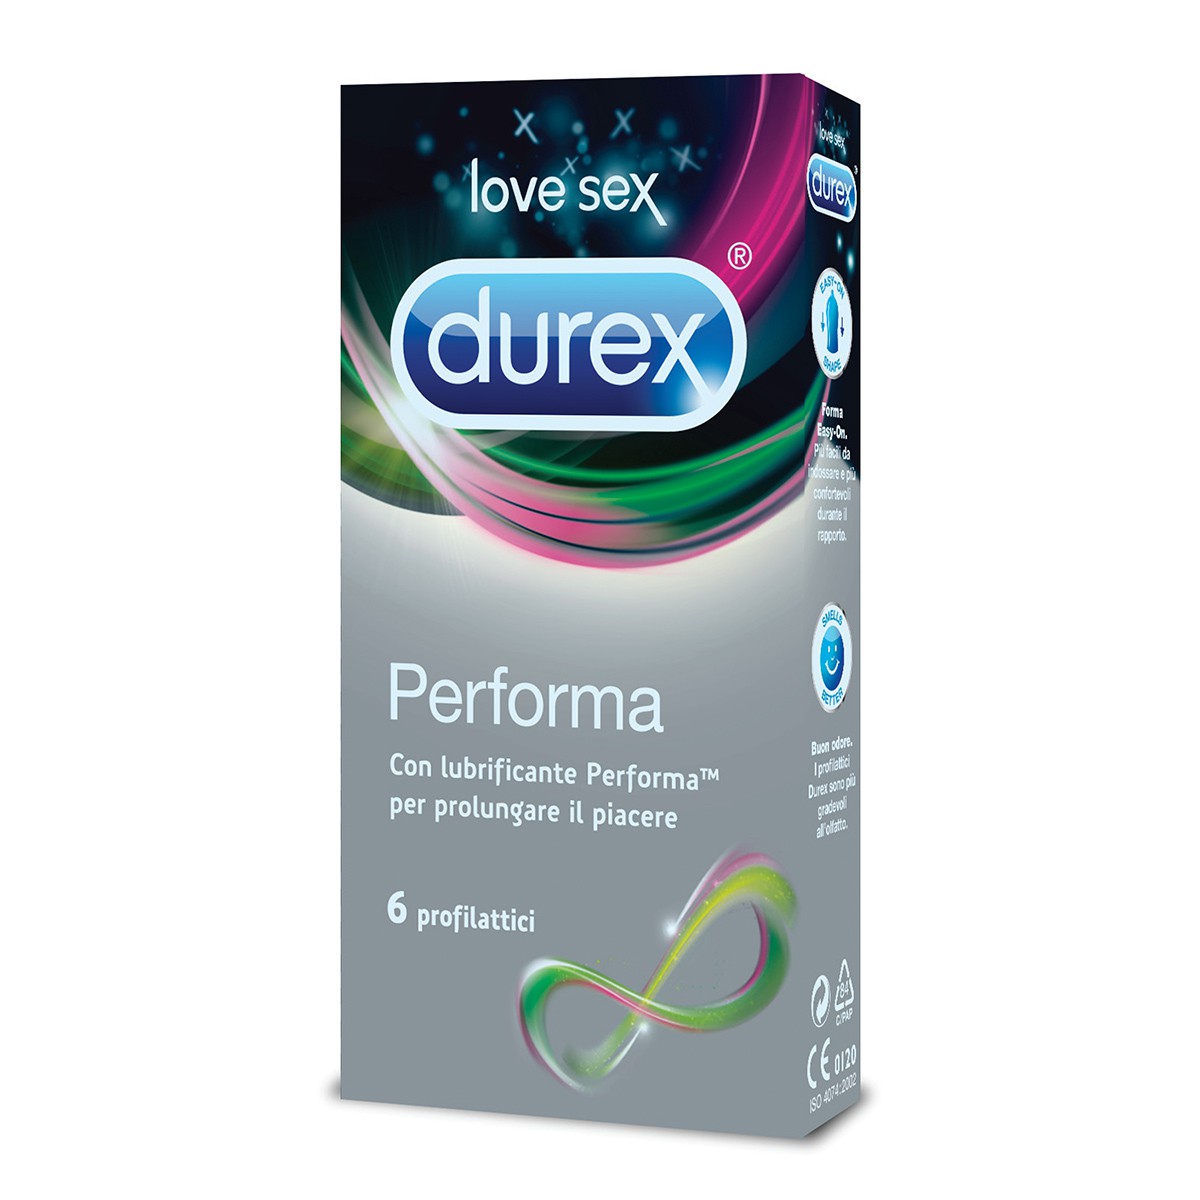 DUREX 12 preservativi performa con lubrificante per prolungare il piacere